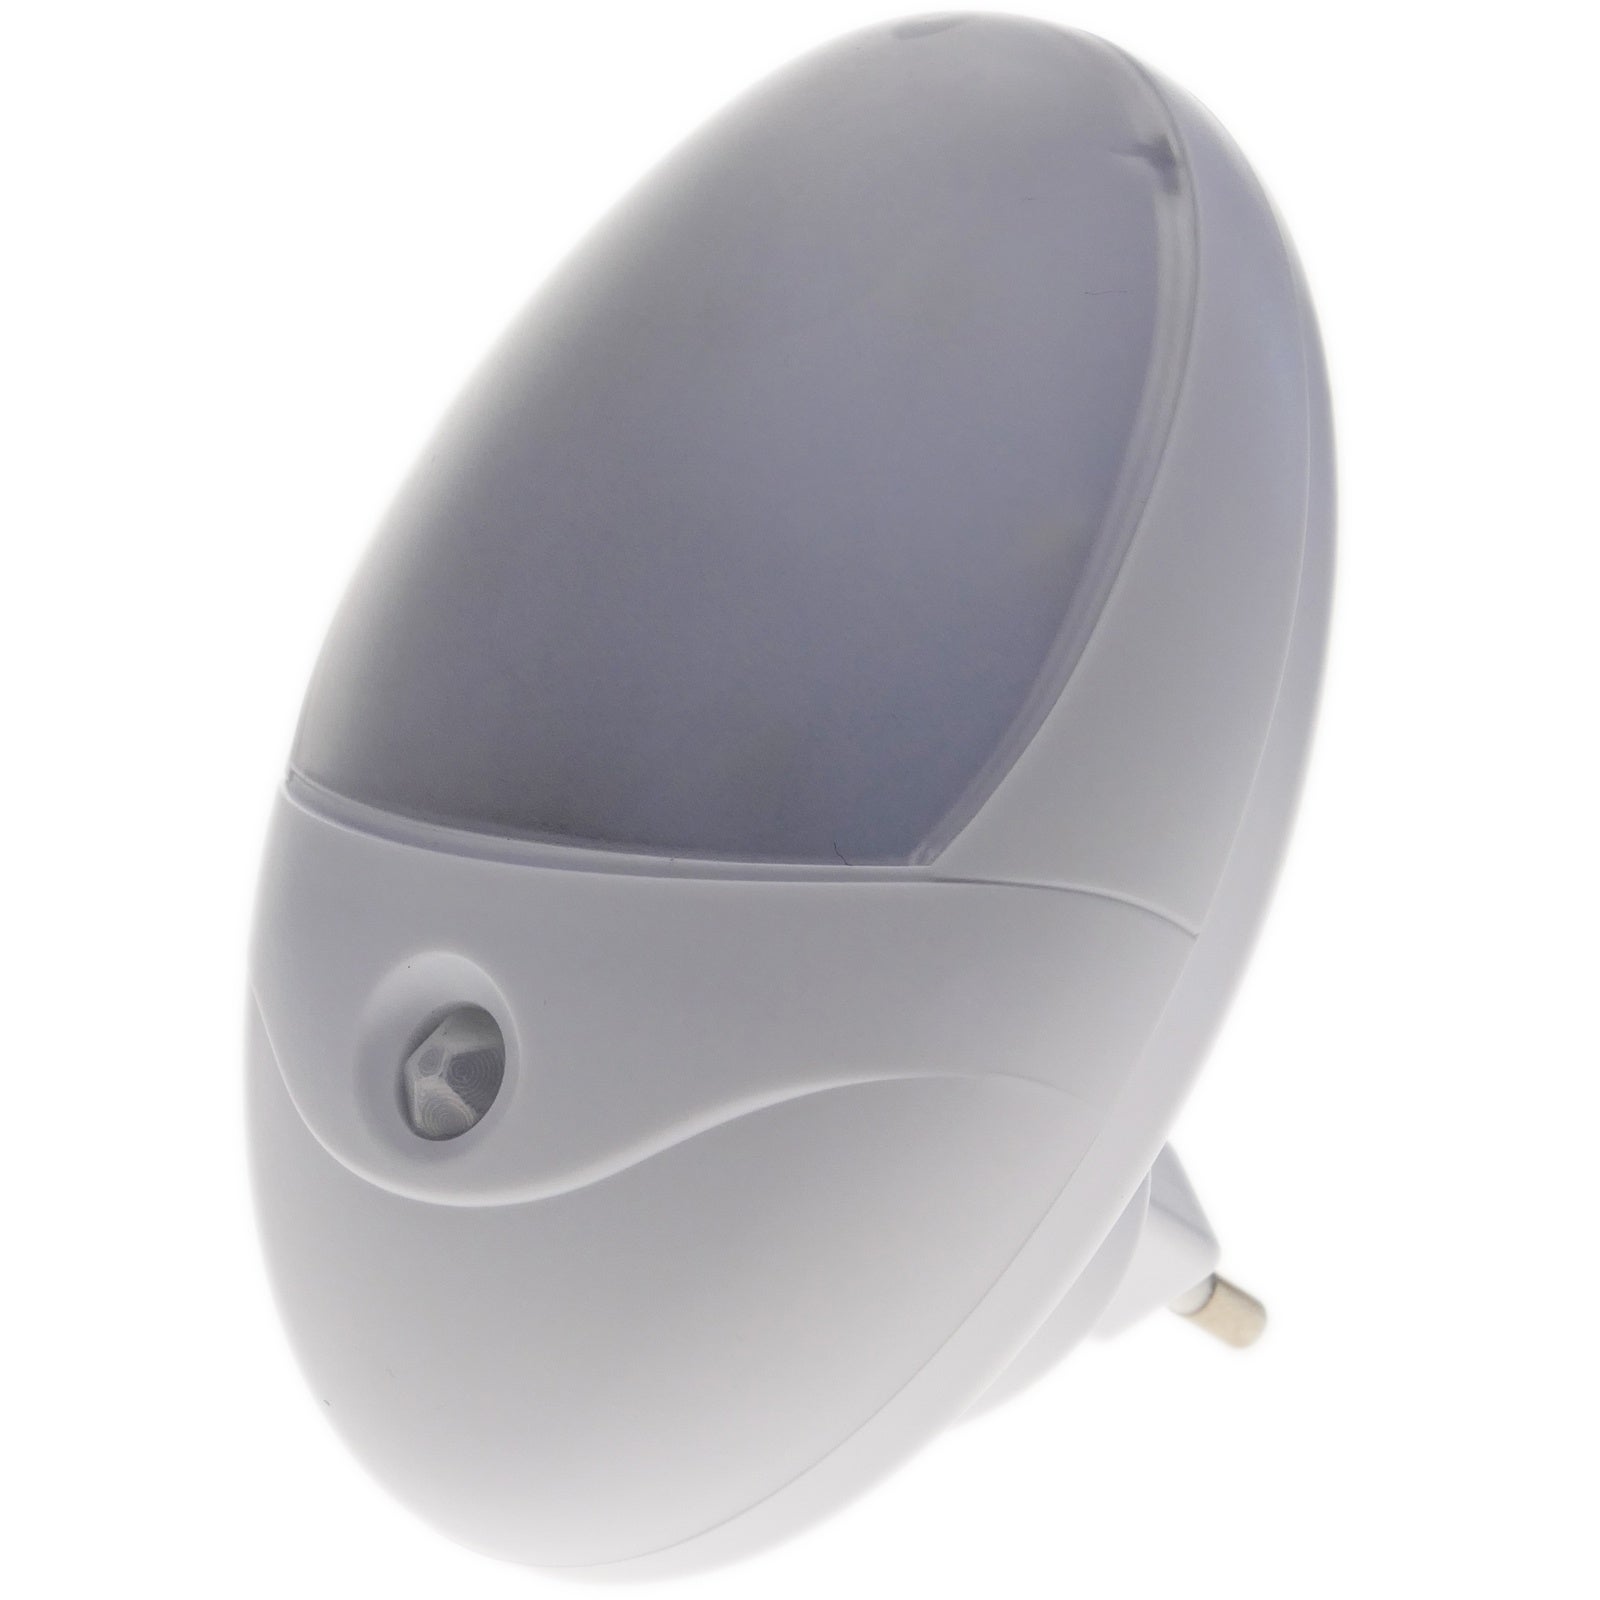 Dww-2pcs Lampe De Toilette Veilleuse Led Detecteur De Mouvement